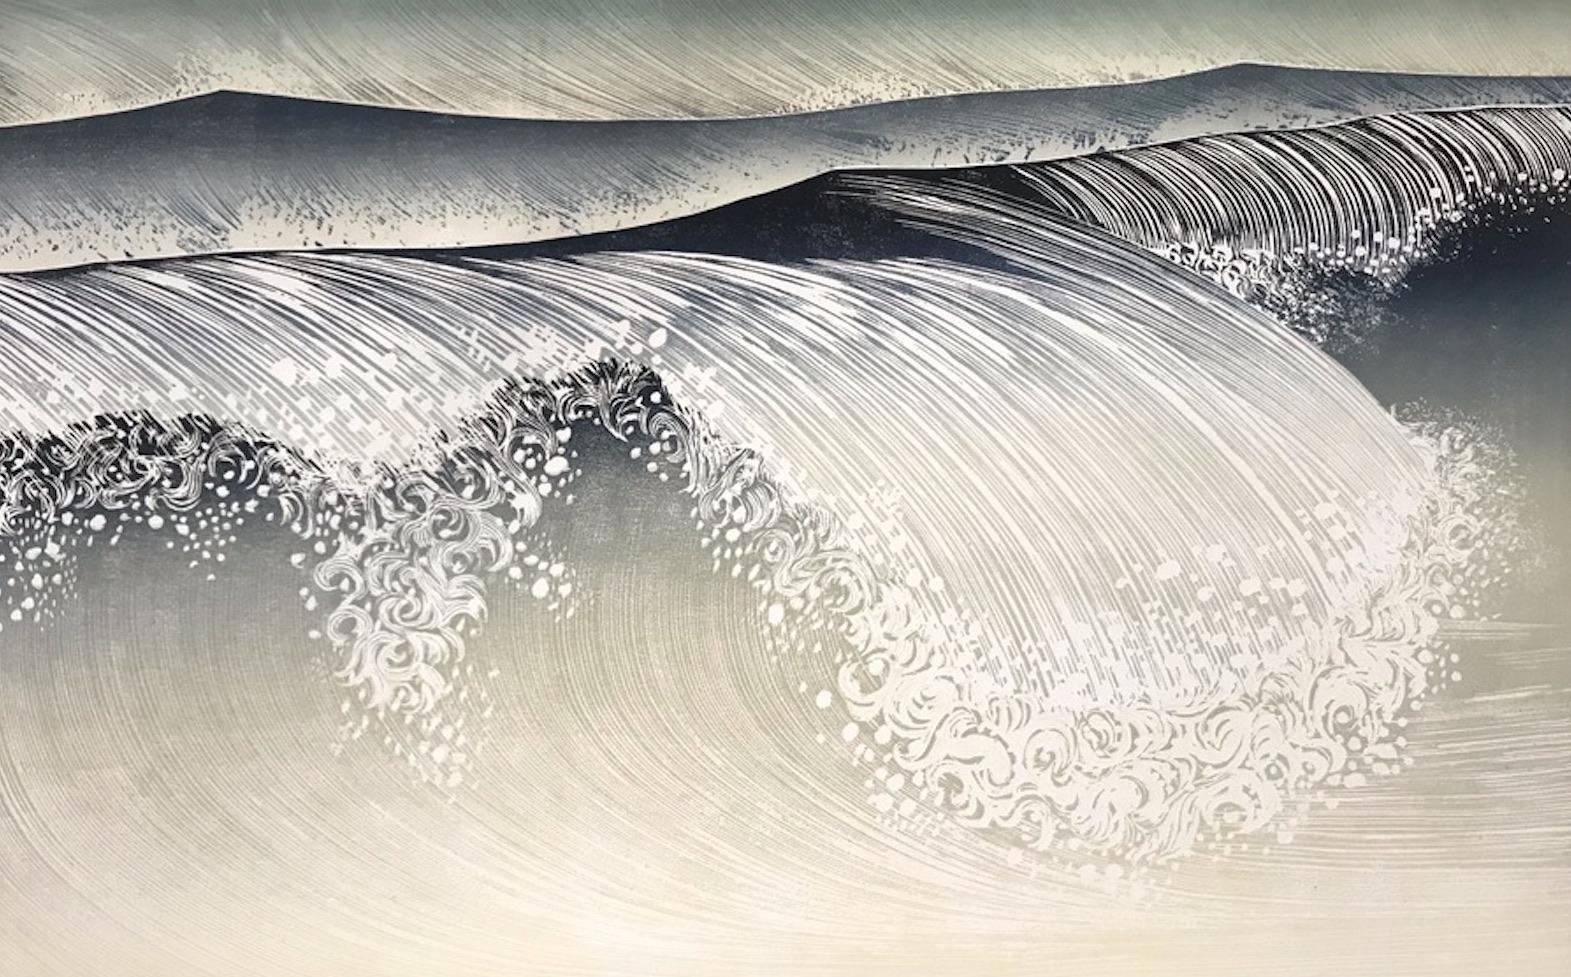 Landscape Print Rod Nelson  - Shorebreak, gravure sur bois de style japonais, impression contemporaine de paysage marin faite à la main,